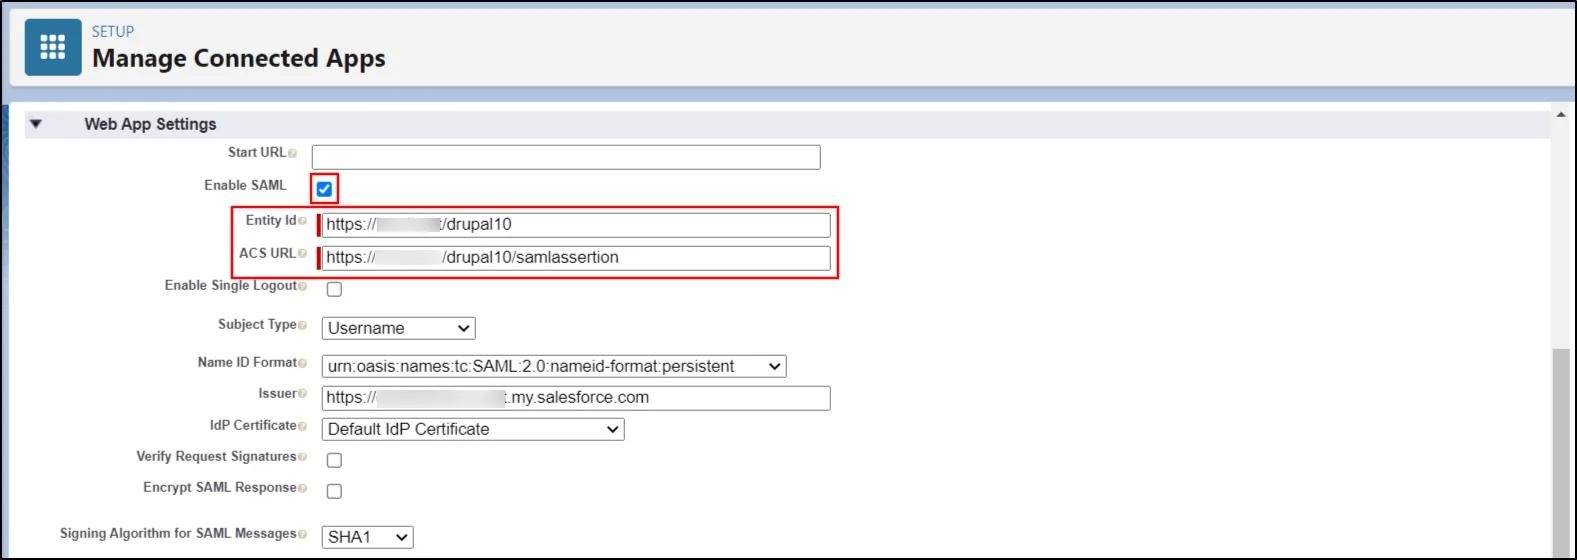 Administrar la configuración de la aplicación web de inicio de sesión único de Salesforce en aplicaciones conectadas